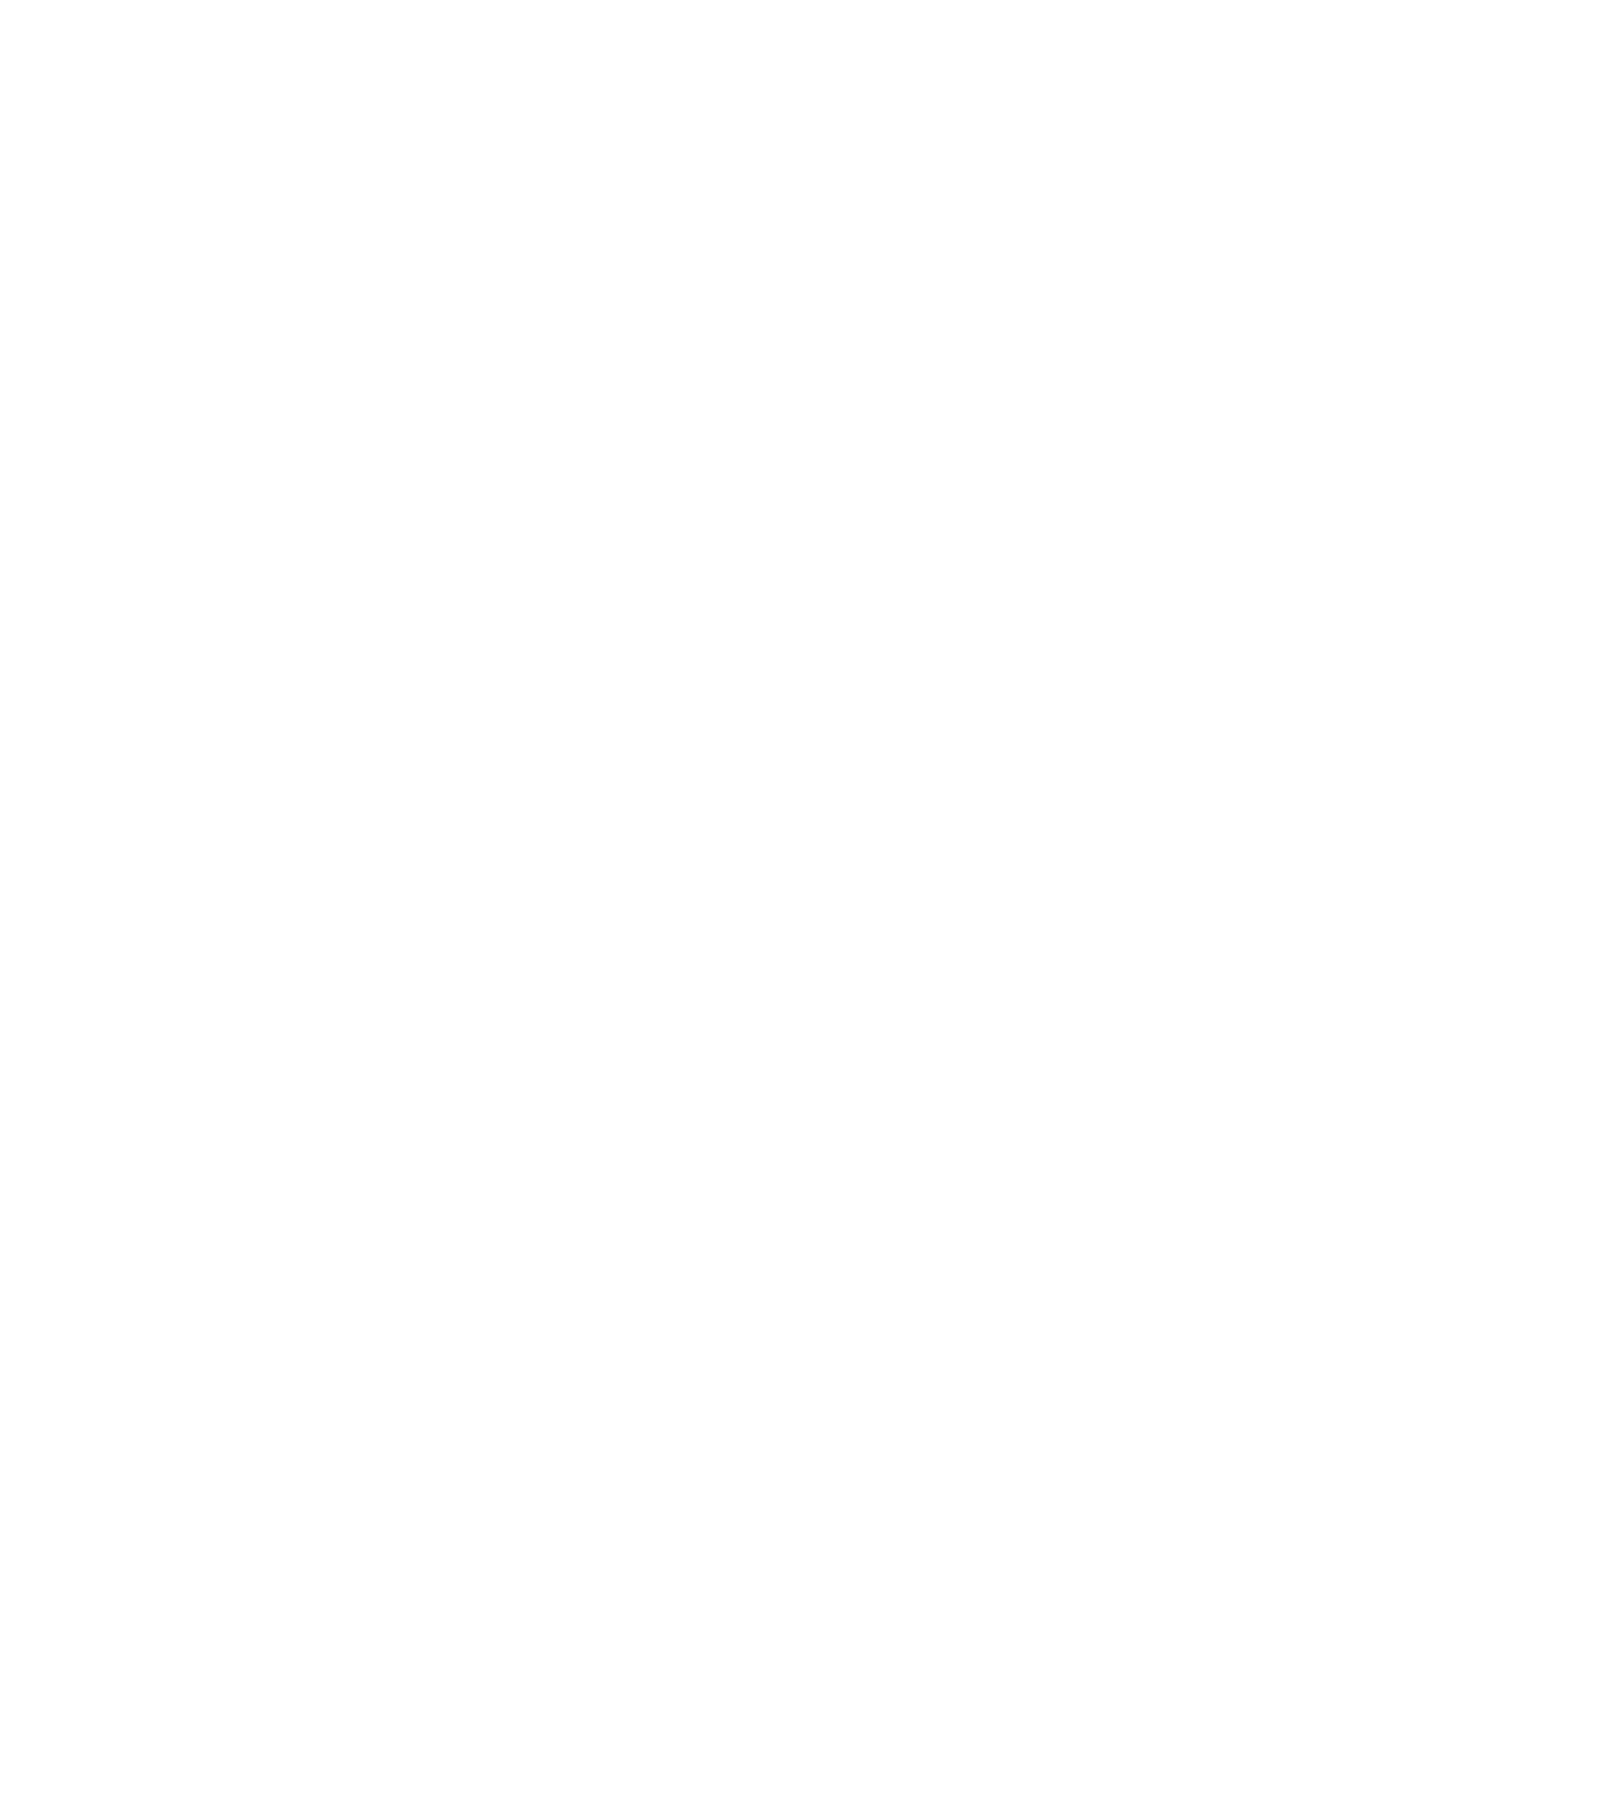 Starbreeze logo large for dark backgrounds (transparent PNG)